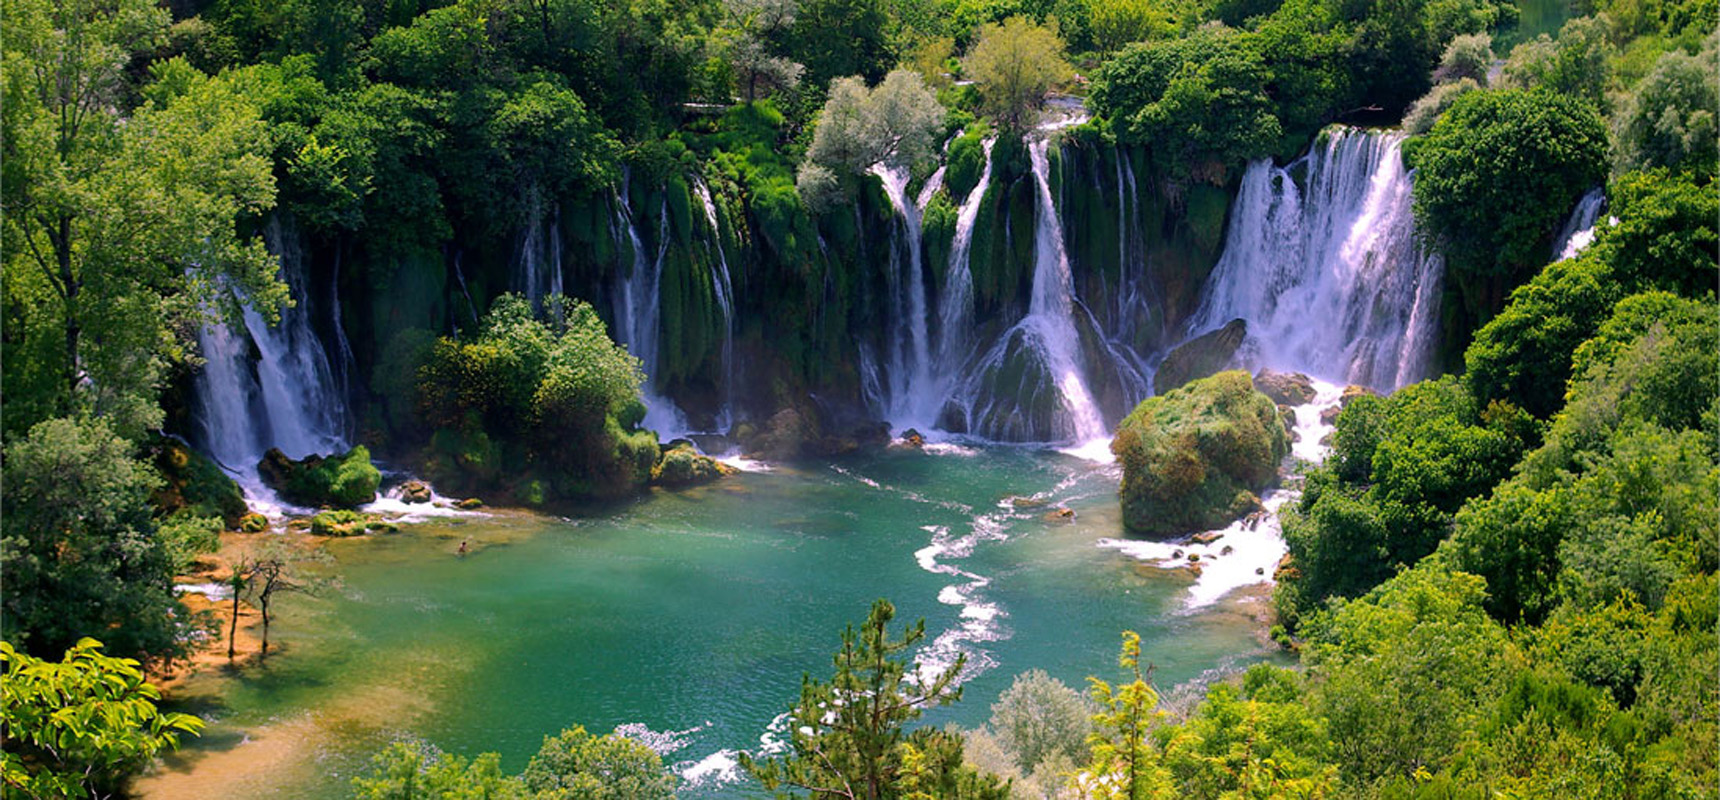  Vodopad Kravica na listi 15 najspektakularnijih kupališta na svijetu